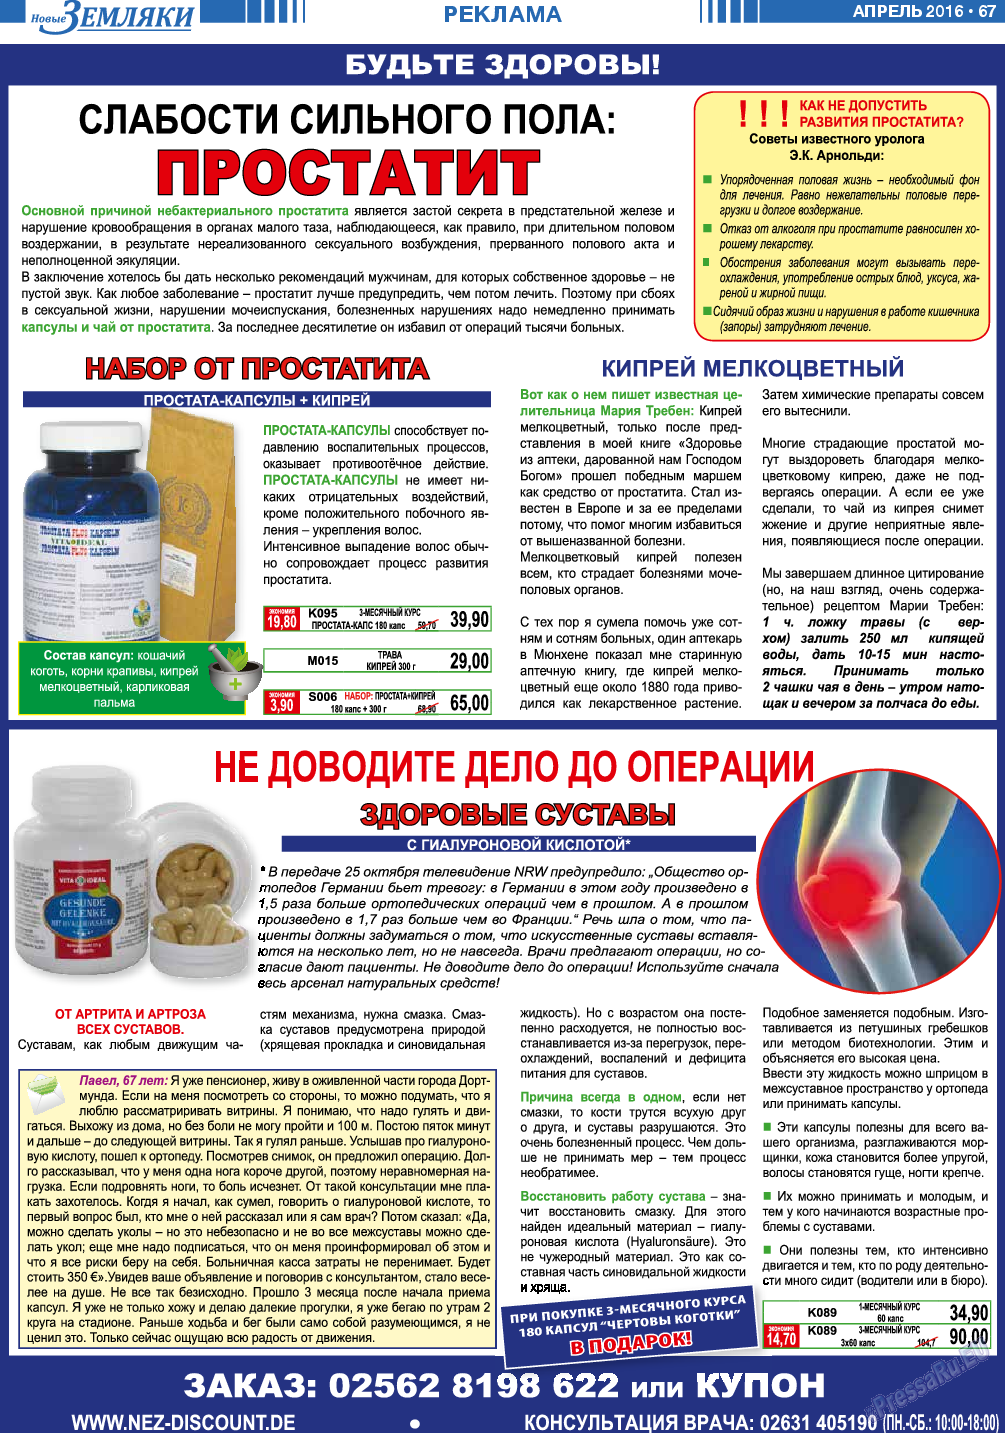 Новые Земляки (газета). 2016 год, номер 4, стр. 67